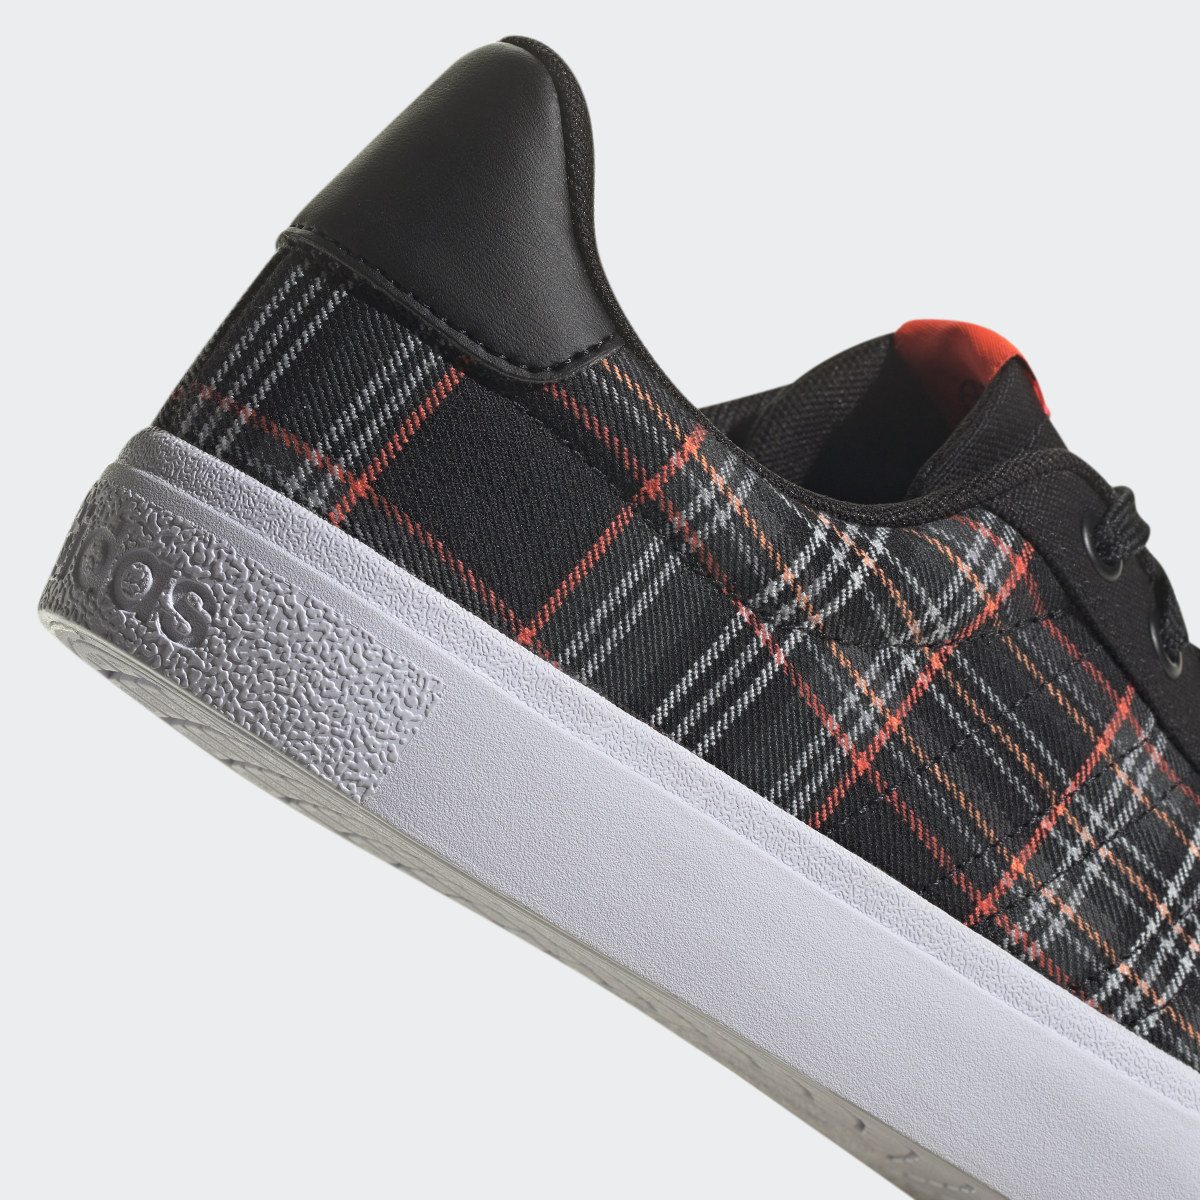 Adidas Chaussure Vulc Raid3r Lifestyle Skateboarding 3-Stripes Branding. 9